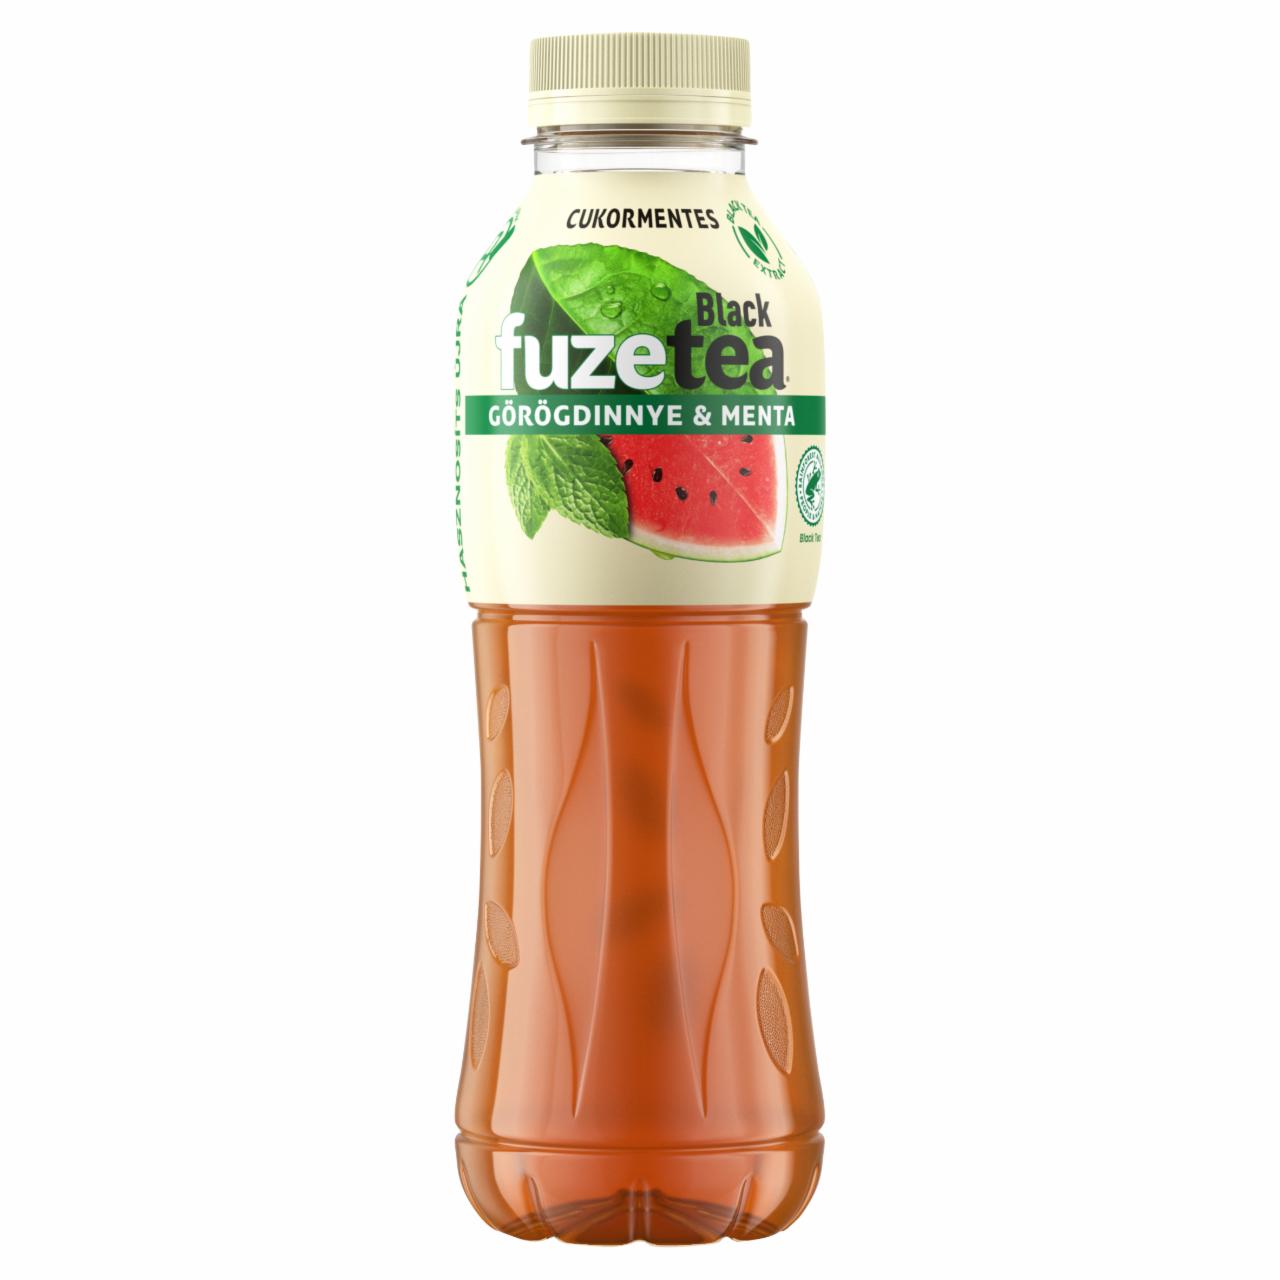 Képek - FUZETEA cukormentes görögdinnye-menta ízesítésű ital fekete tea és menta kivonattal 500 ml